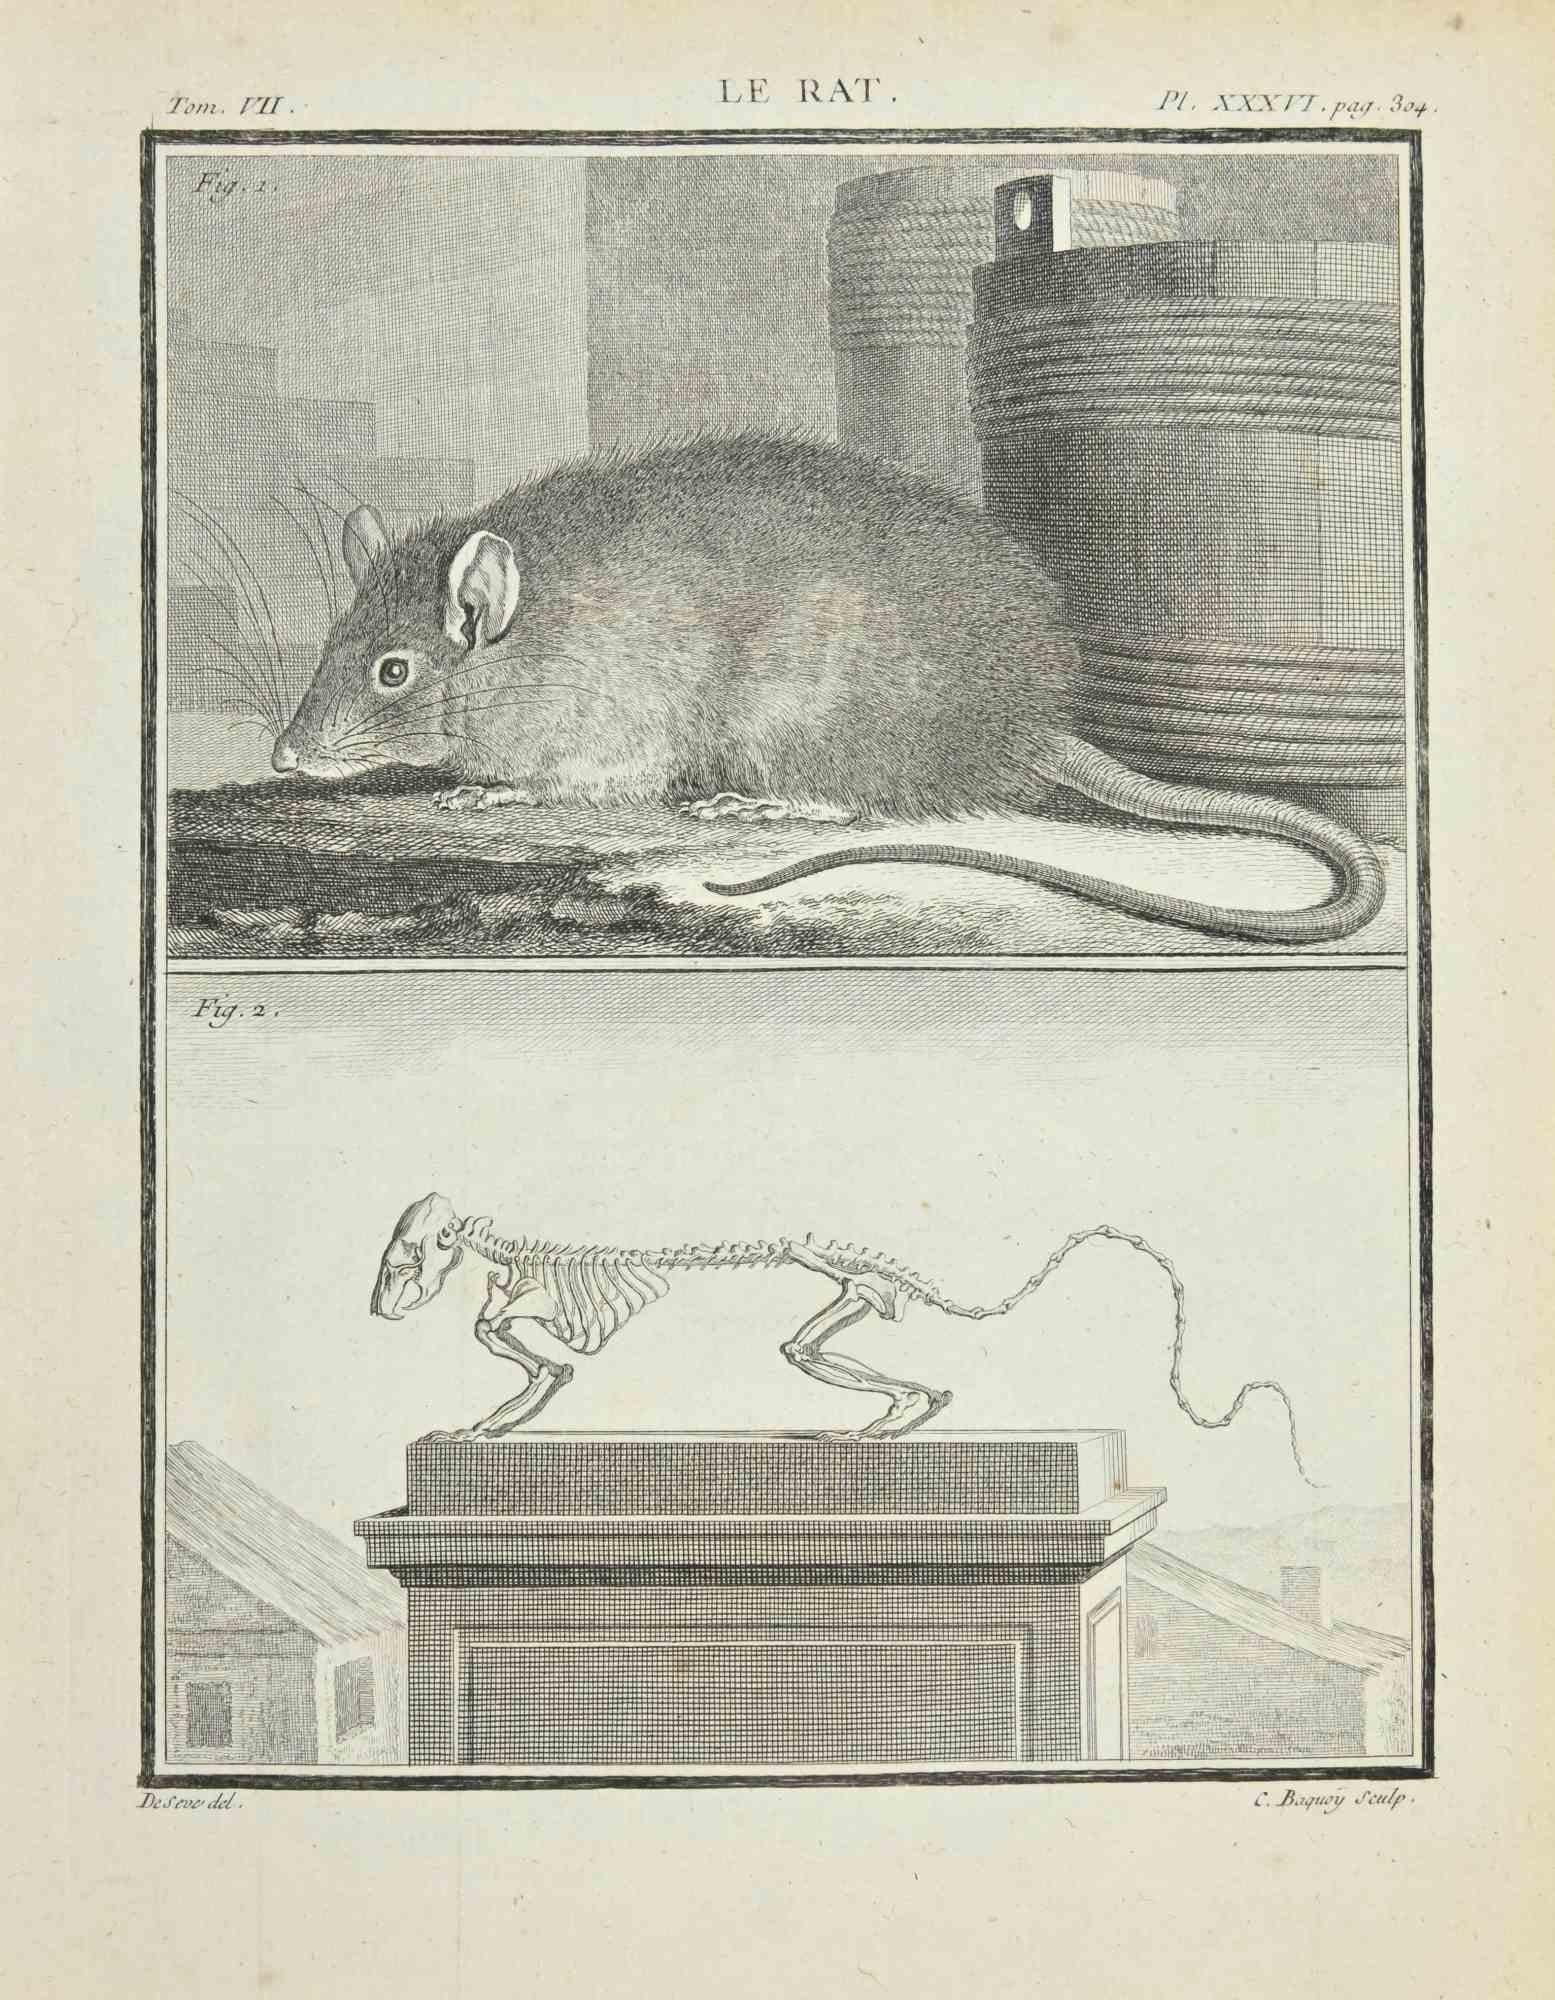 Le Rat est une eau-forte réalisée par Jacques Baron en 1771.

Il appartient à la suite "Histoire Naturelle de Buffon".

La signature de l'Artistics est gravée en bas à droite.

Bon état avec de légères rousseurs.